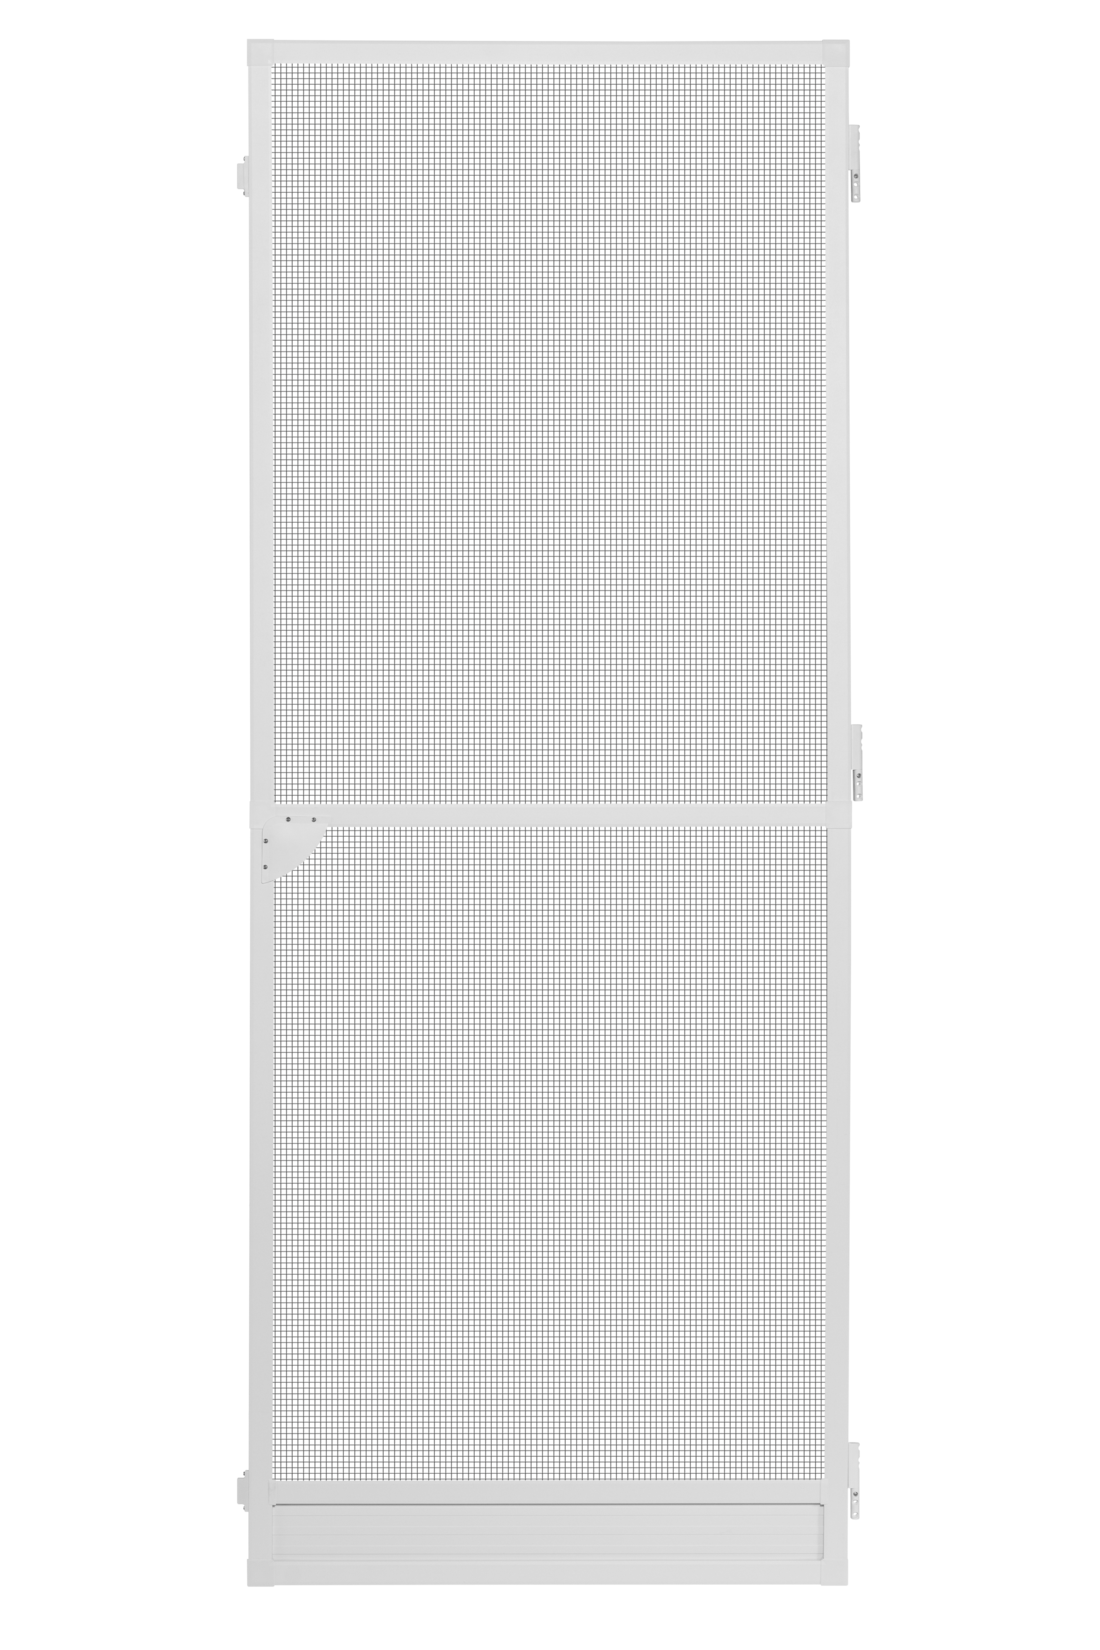 Schellenberg Insektenschutztür PLUS, weiß, 100 x 210 cm